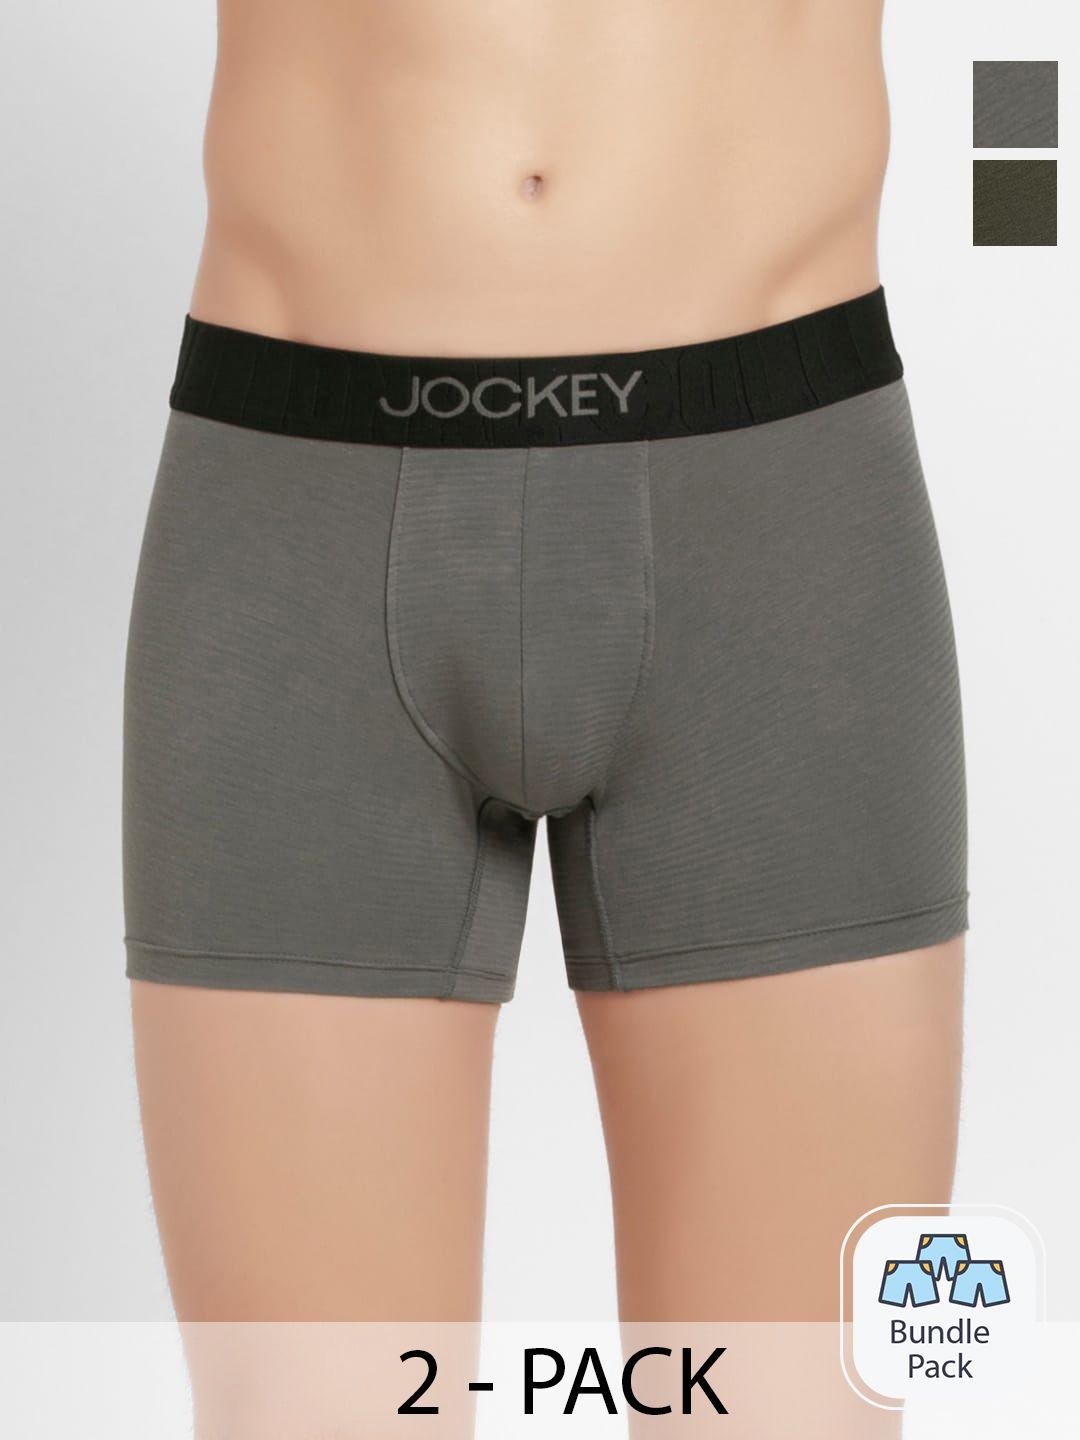 jockey pack of 2 outer elastic short trunks